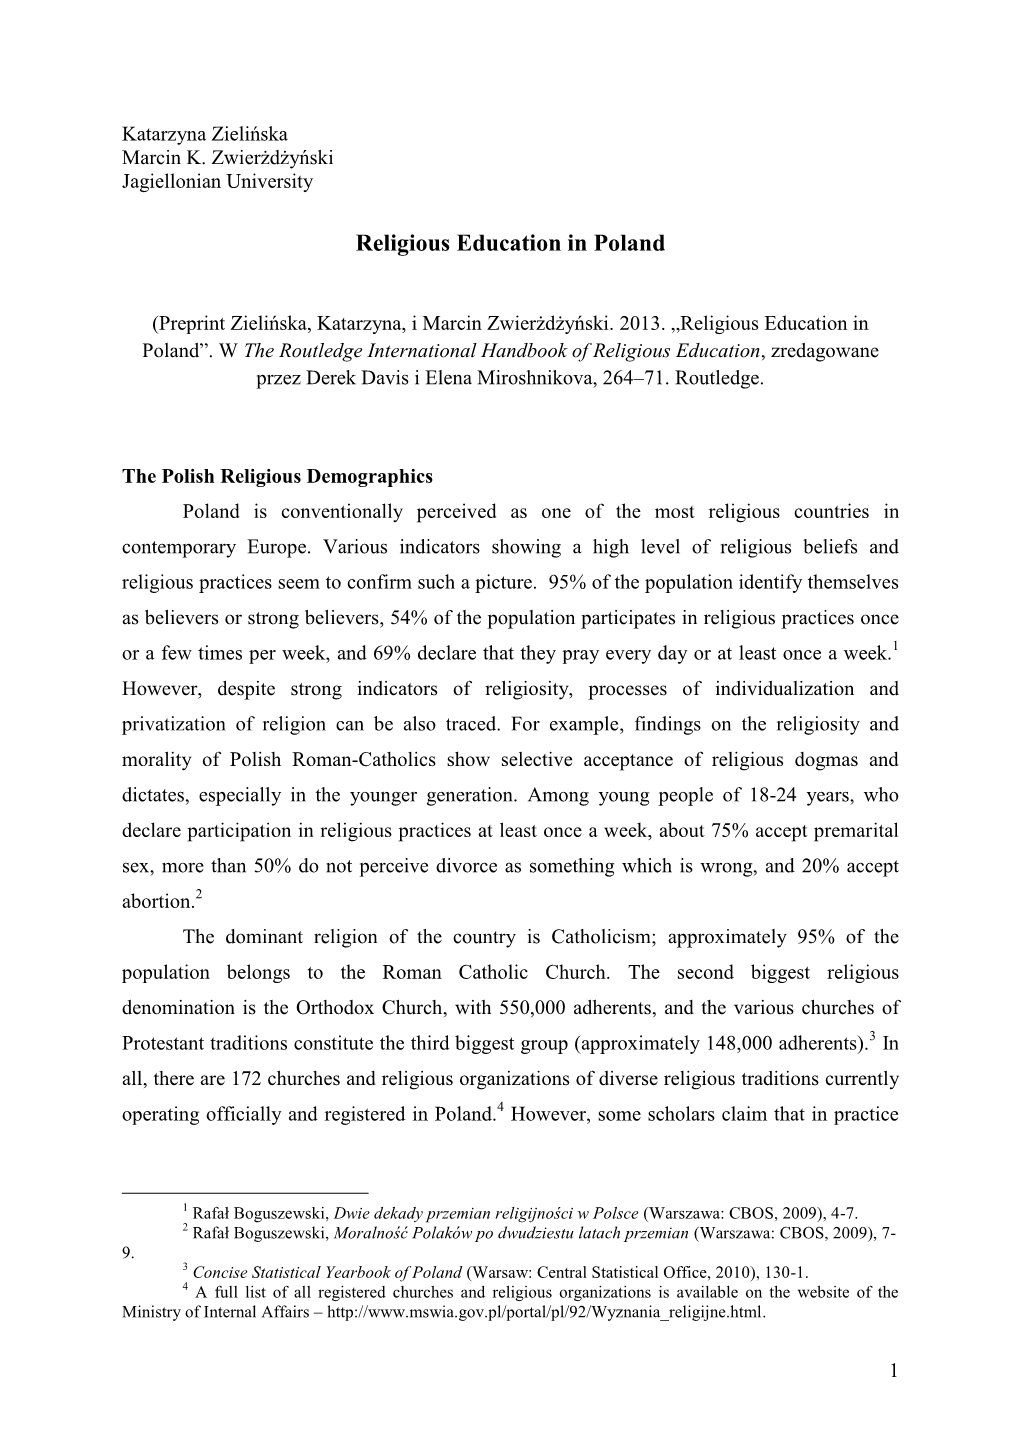 Religious Education in Poland